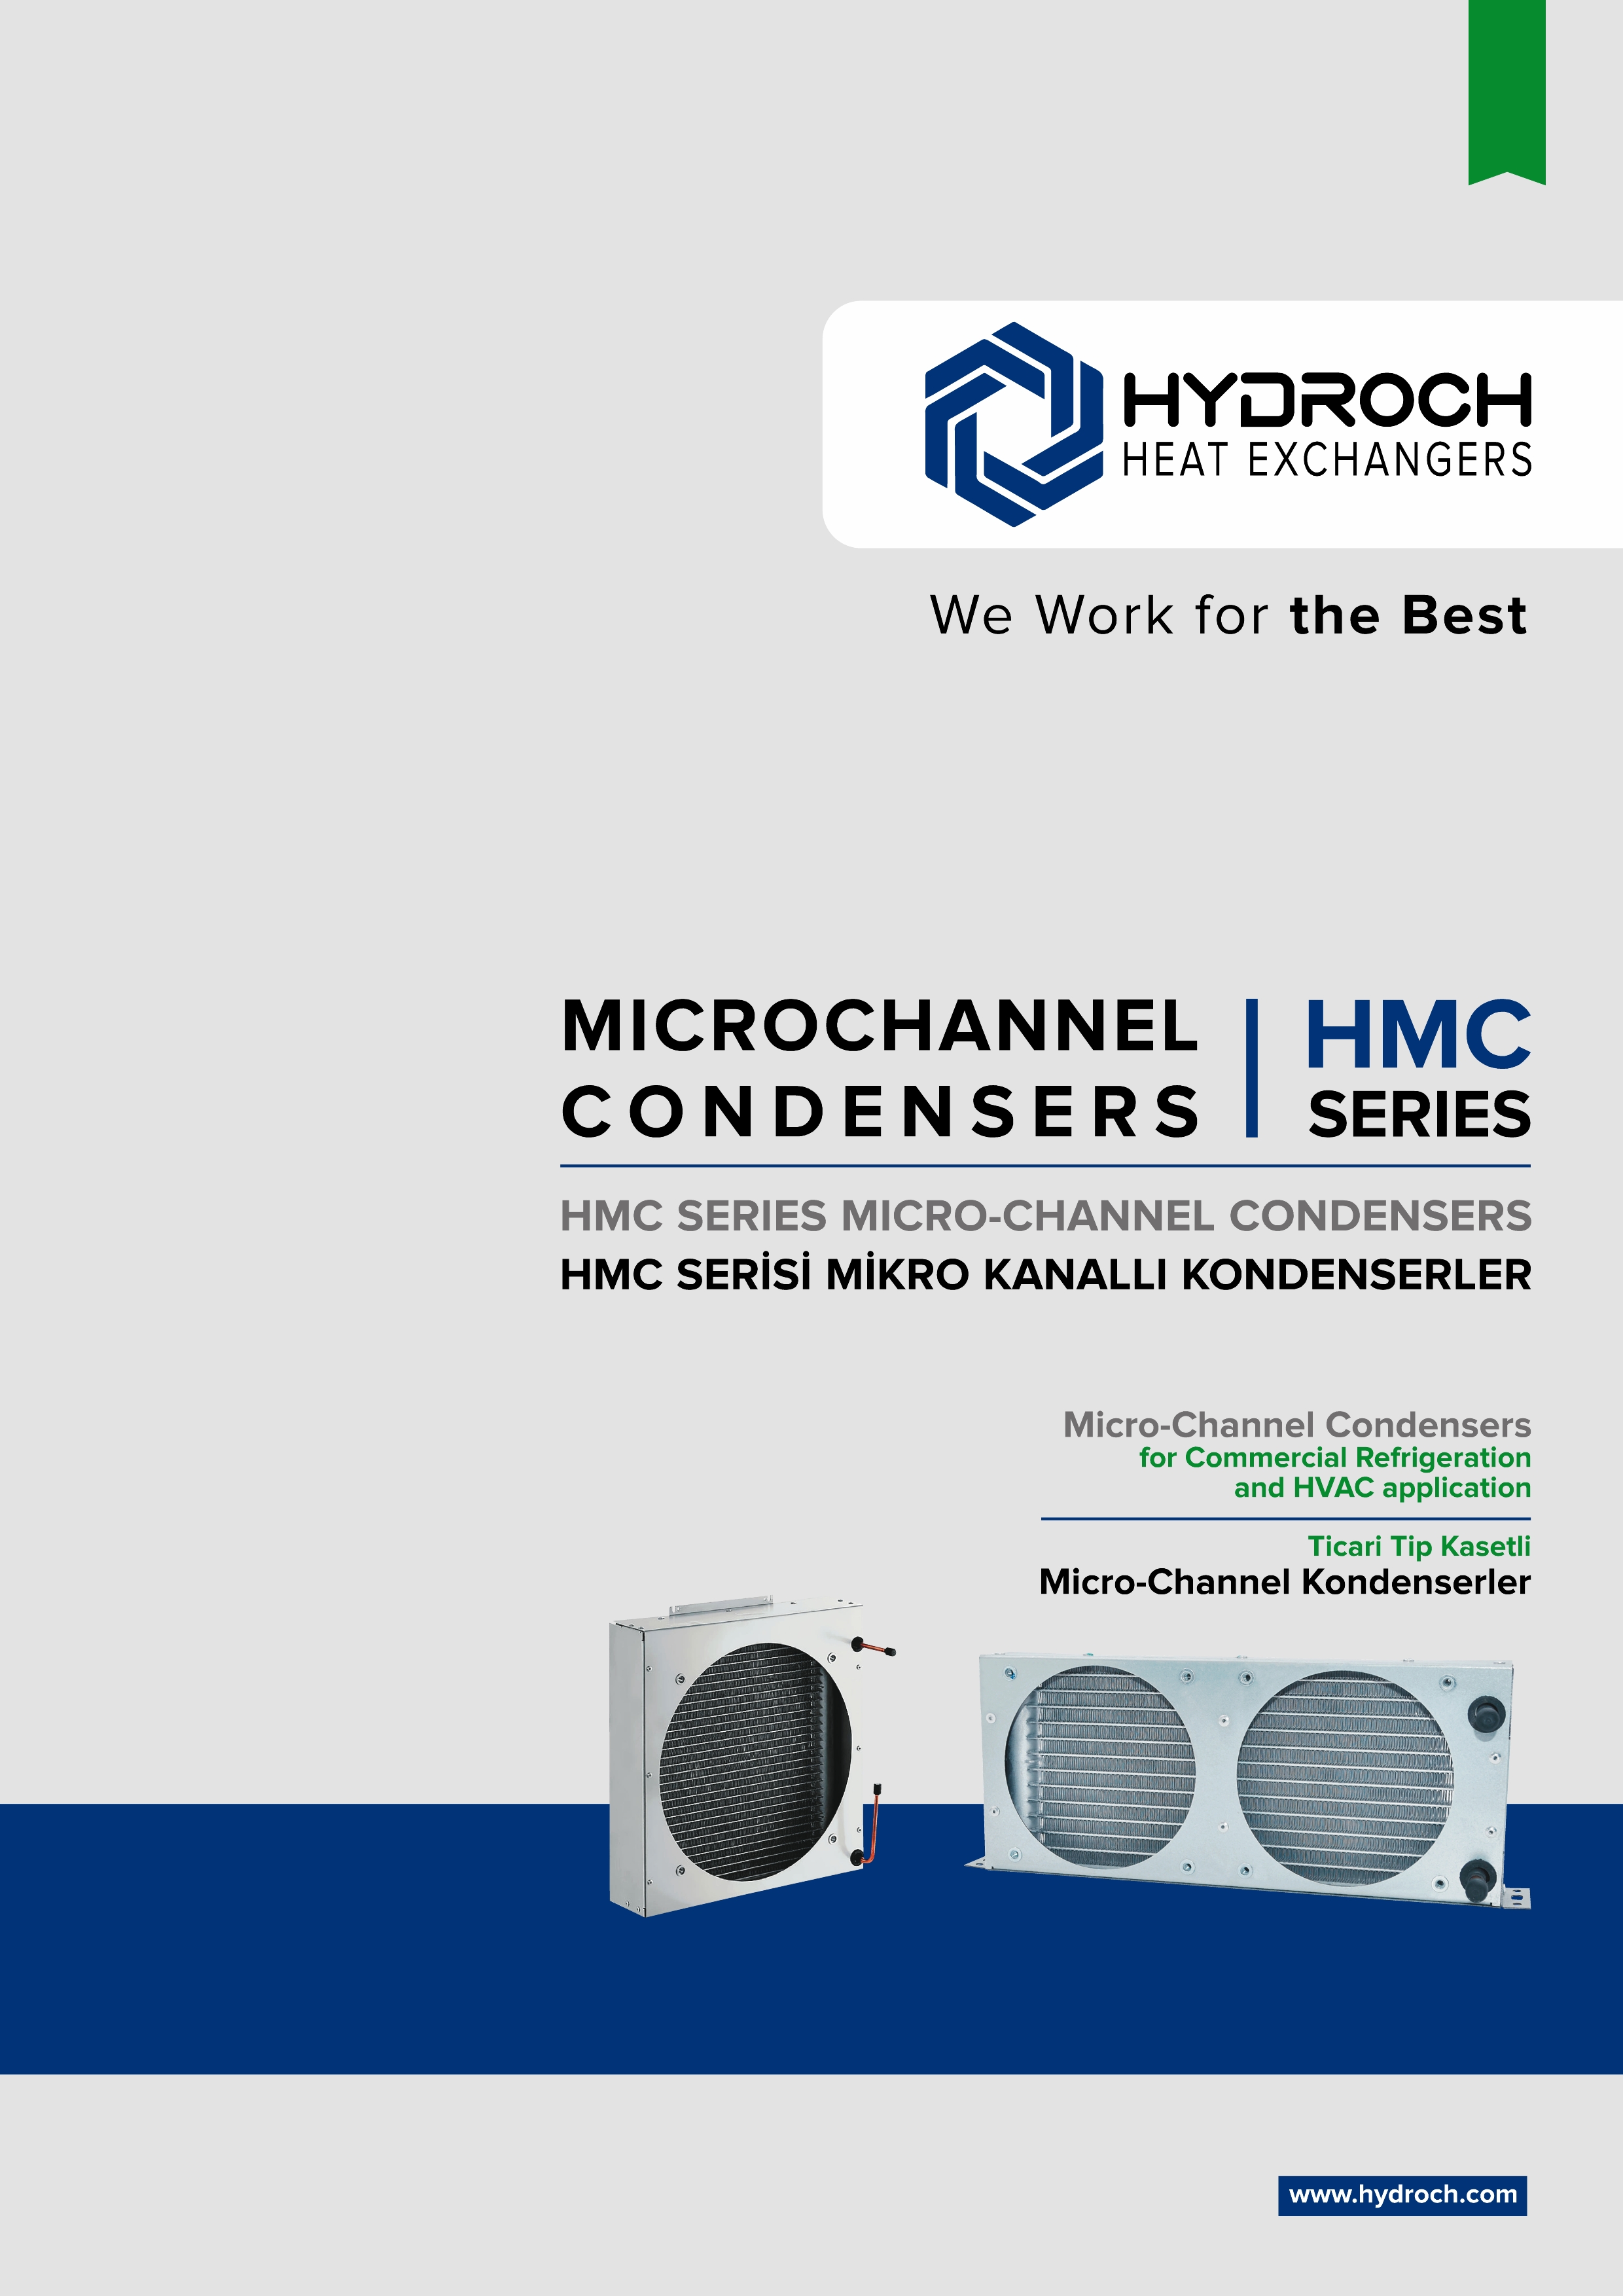 HMC Series Cased Micro-Channel Condensers Catalog